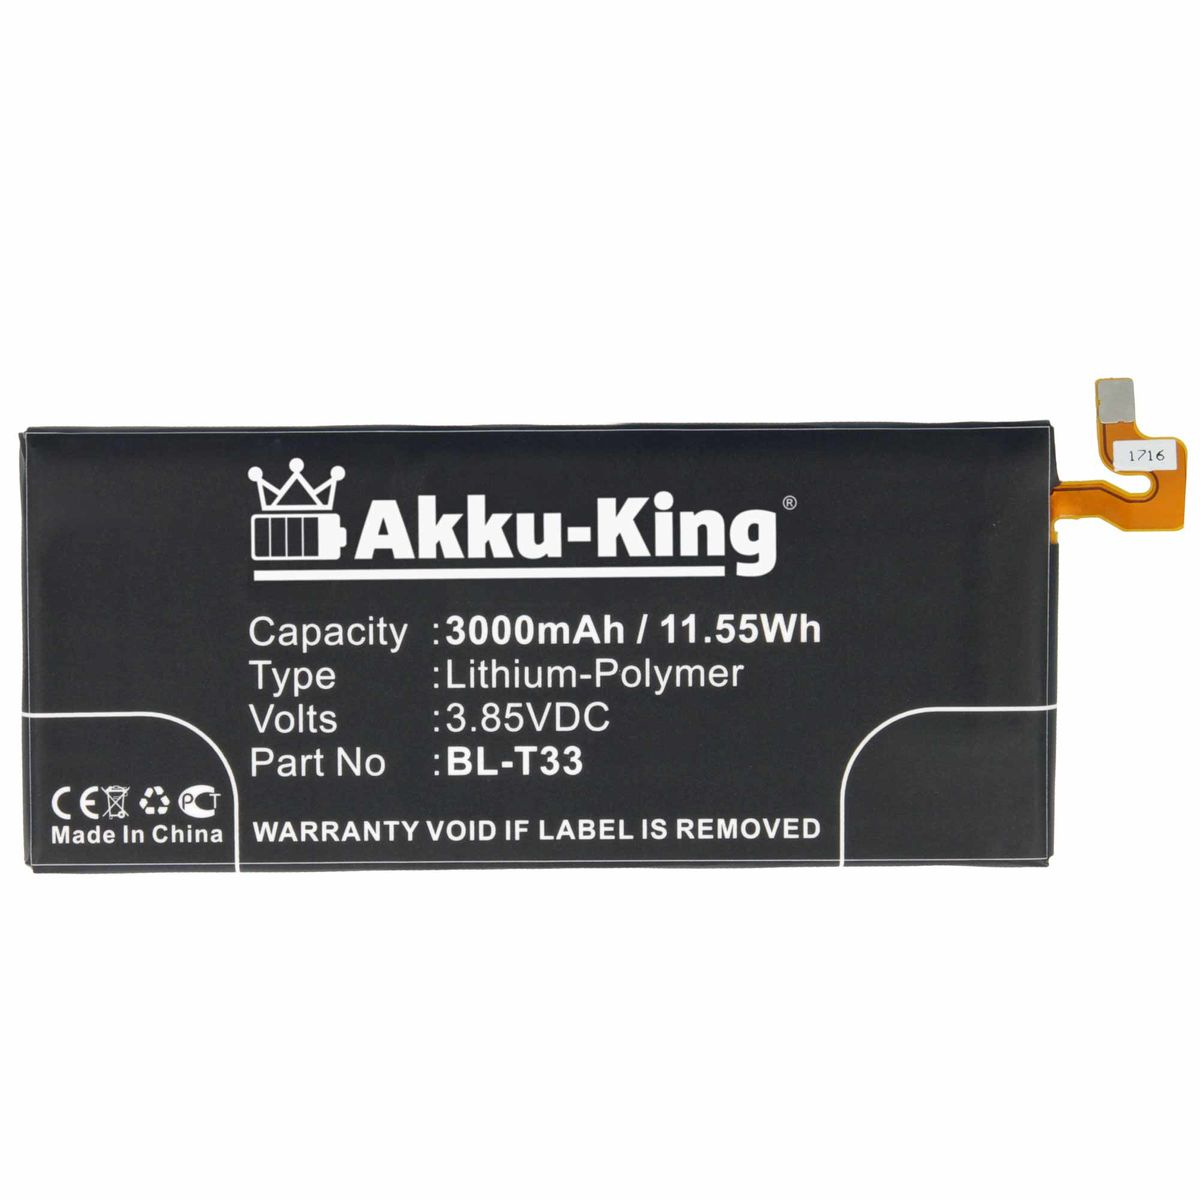 AKKU-KING LG 3.85 kompatibel 3000mAh mit Akku Handy-Akku, Li-Polymer Volt, BL-T33